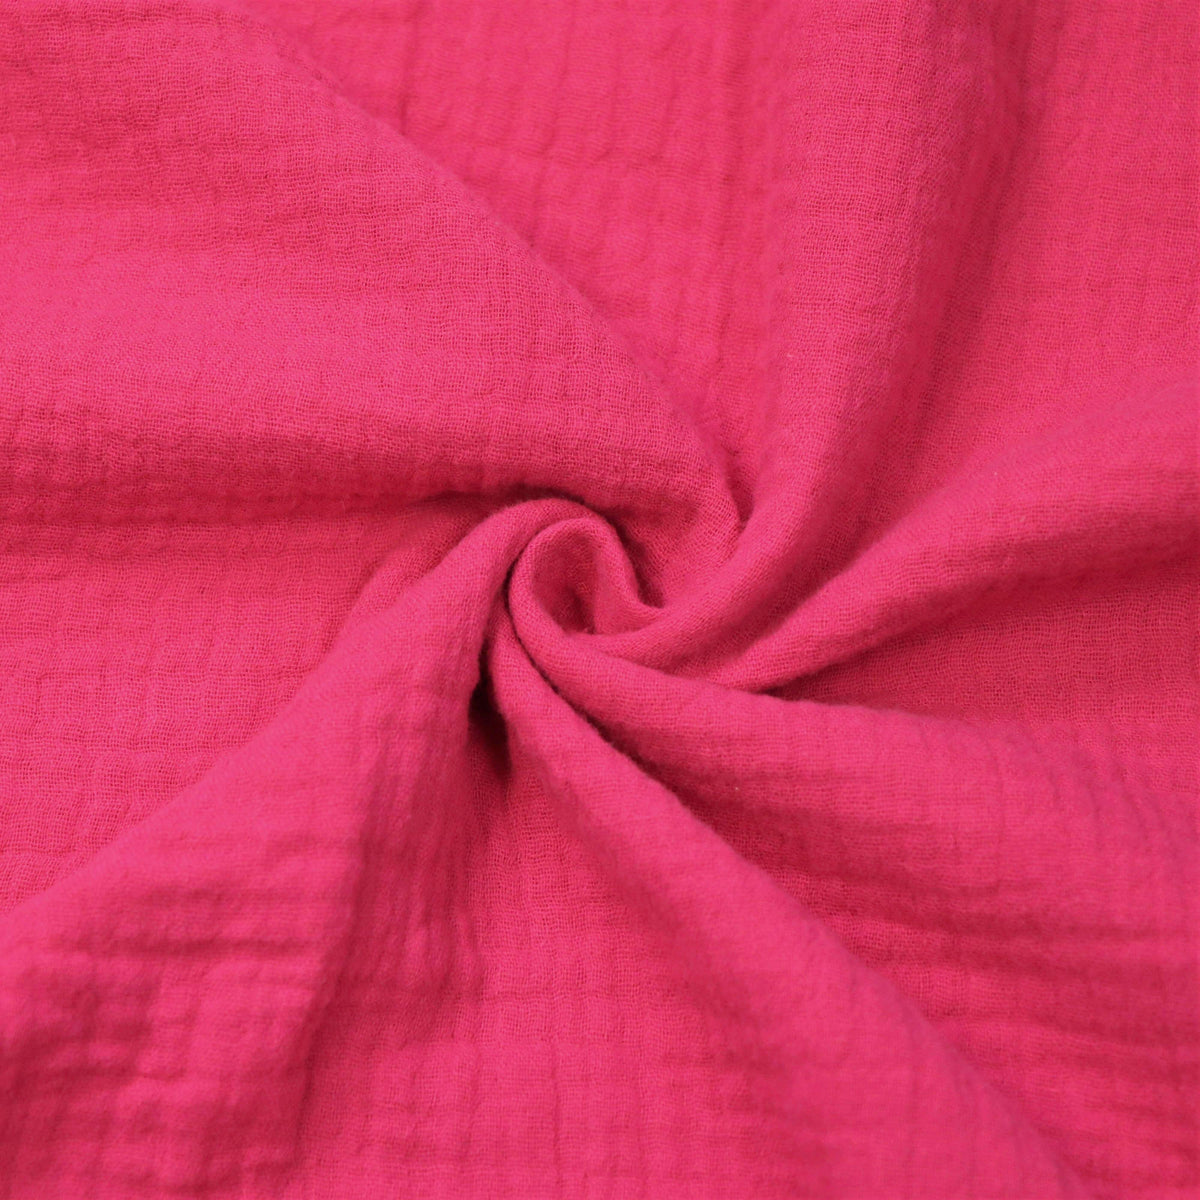 Musselin Liebe Stofffarbe pink